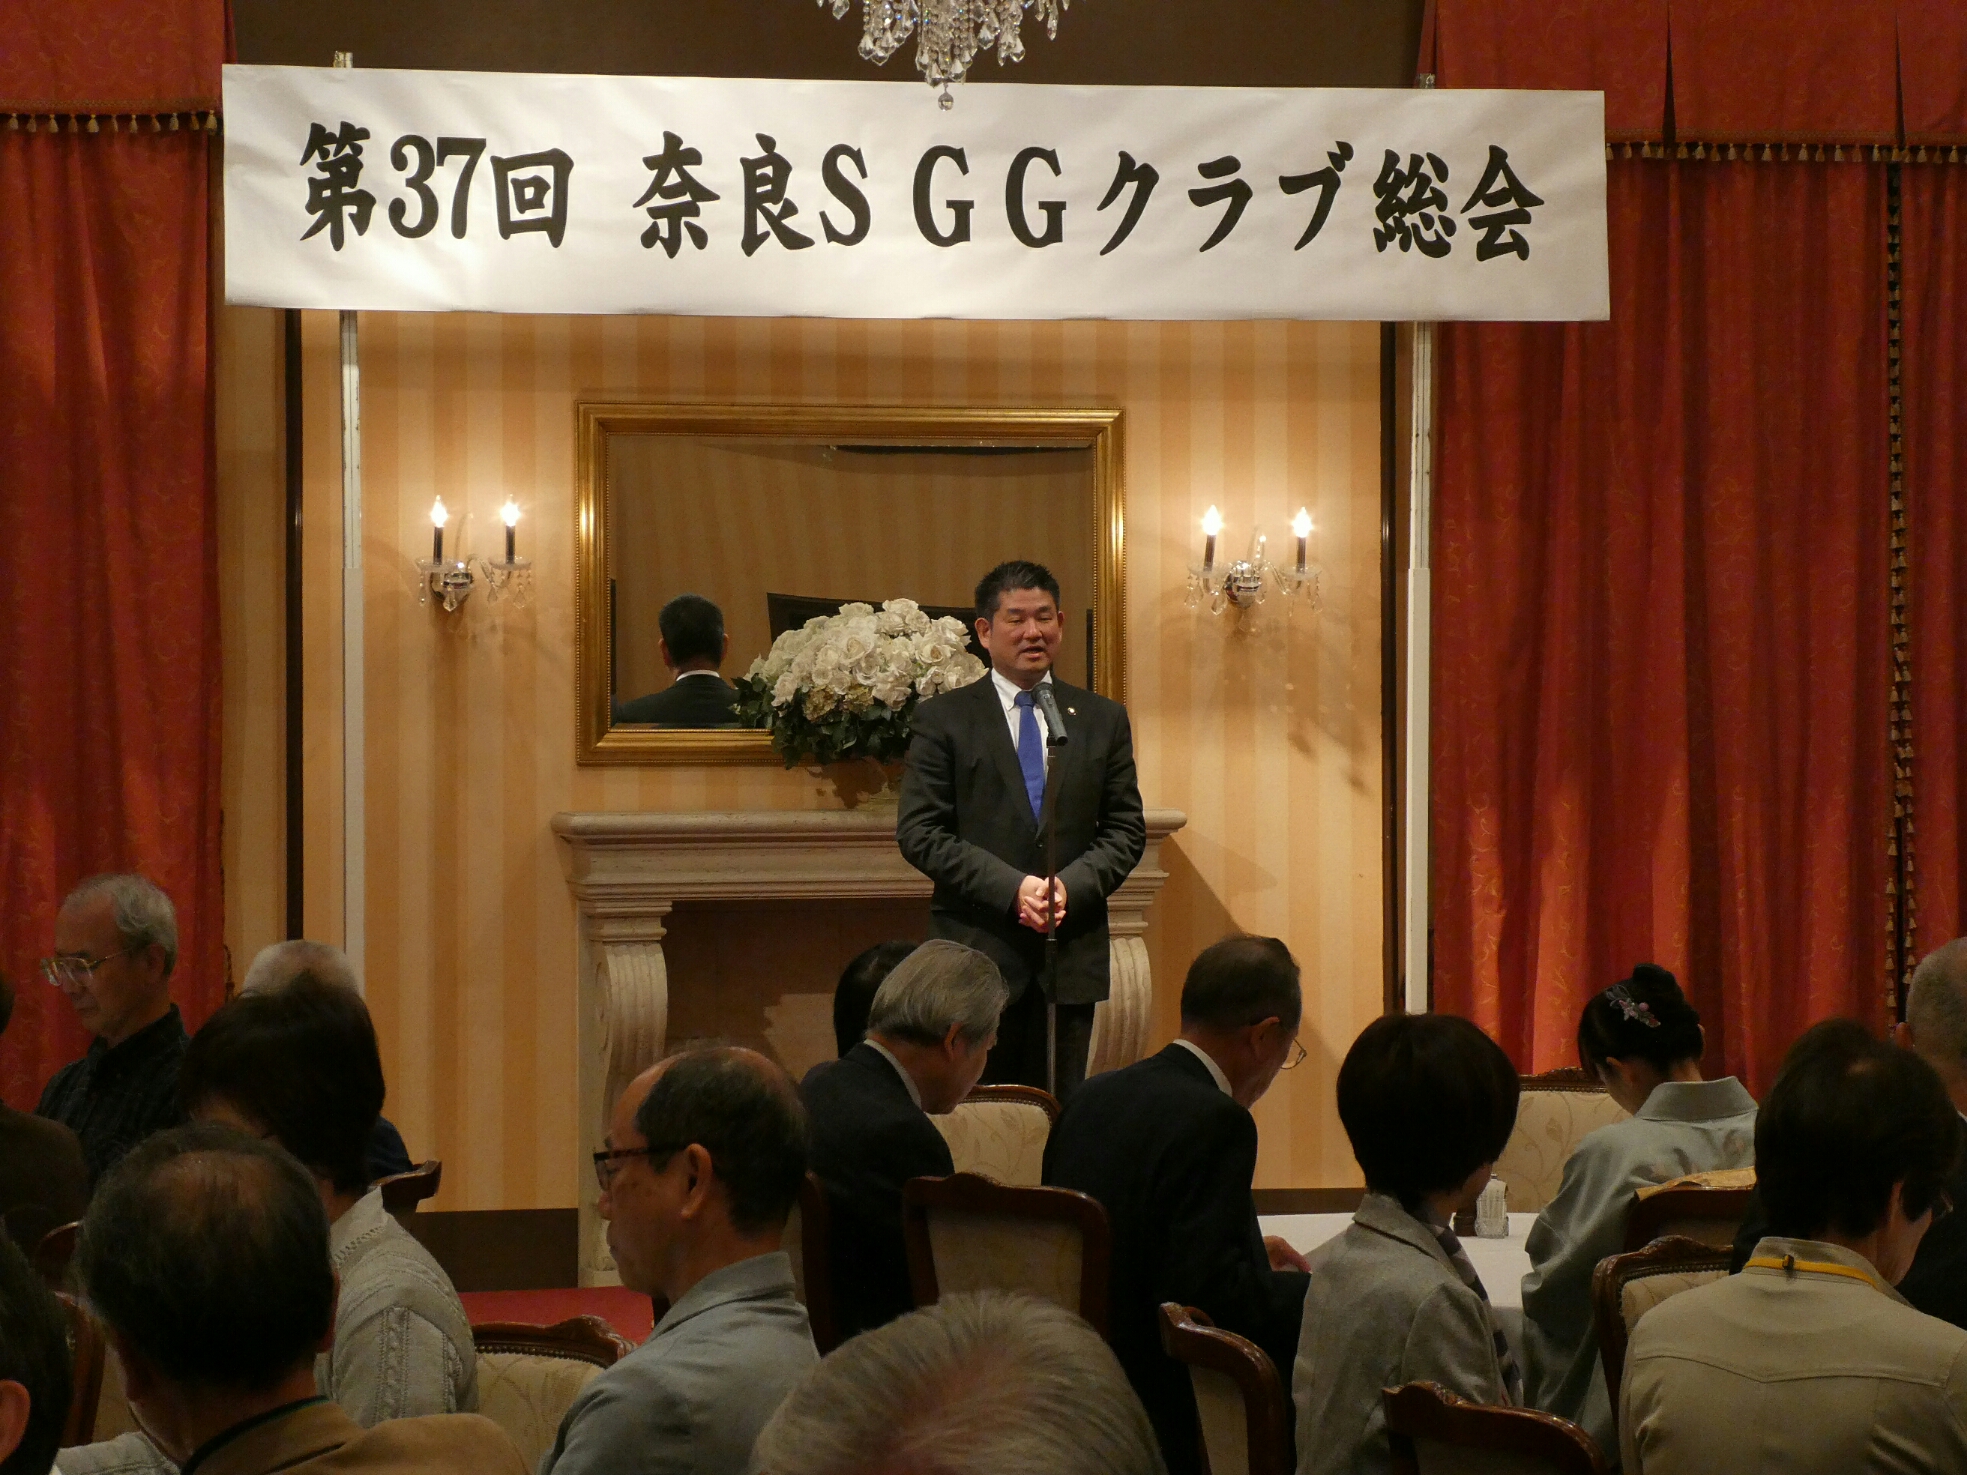 奈良SGGクラブ総会の画像